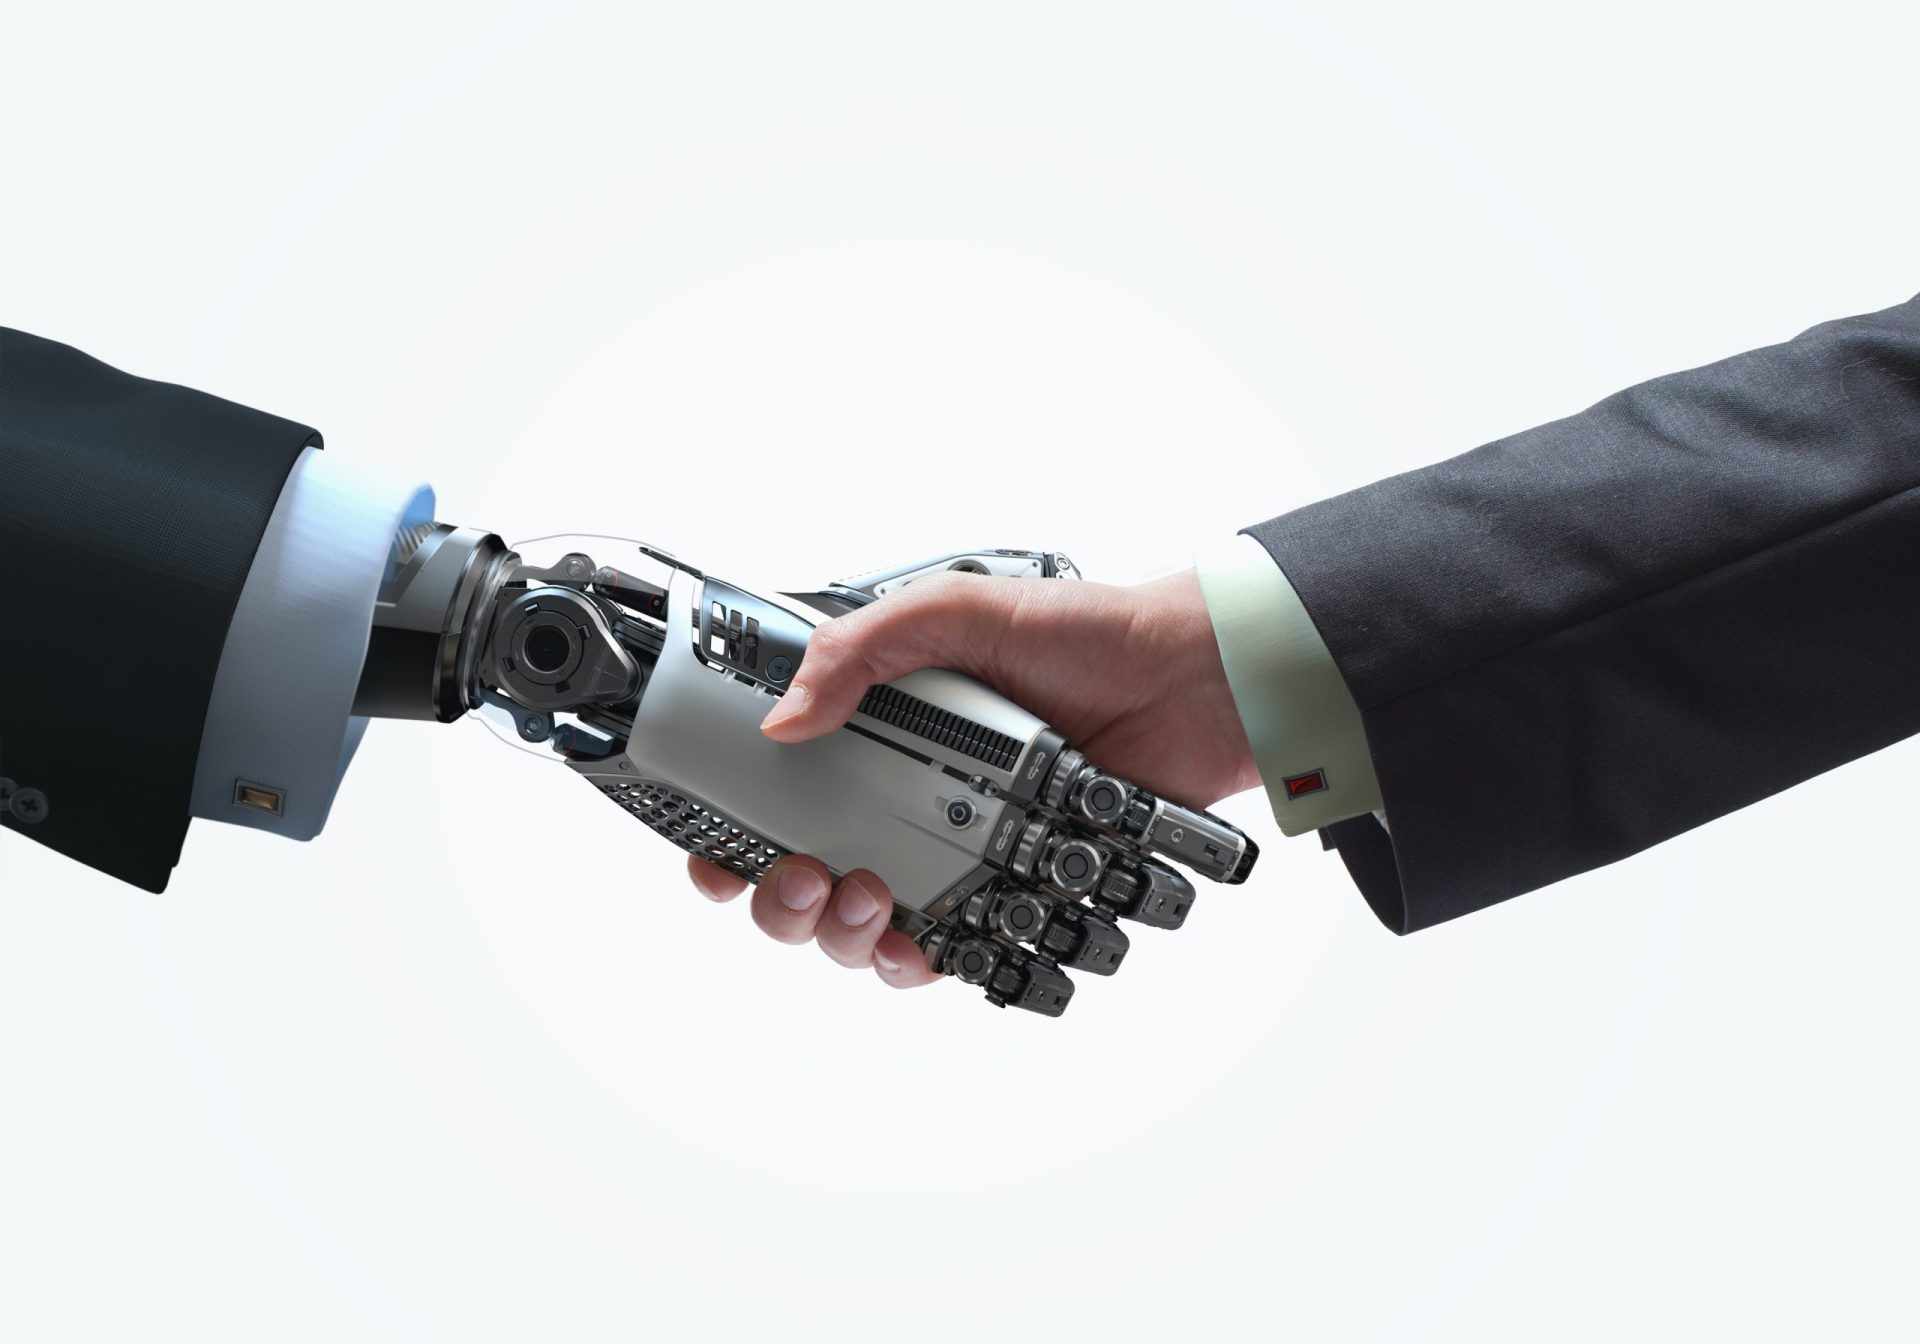 Tecnologia desenvolvida por português melhora comunicação entre humanos e robots